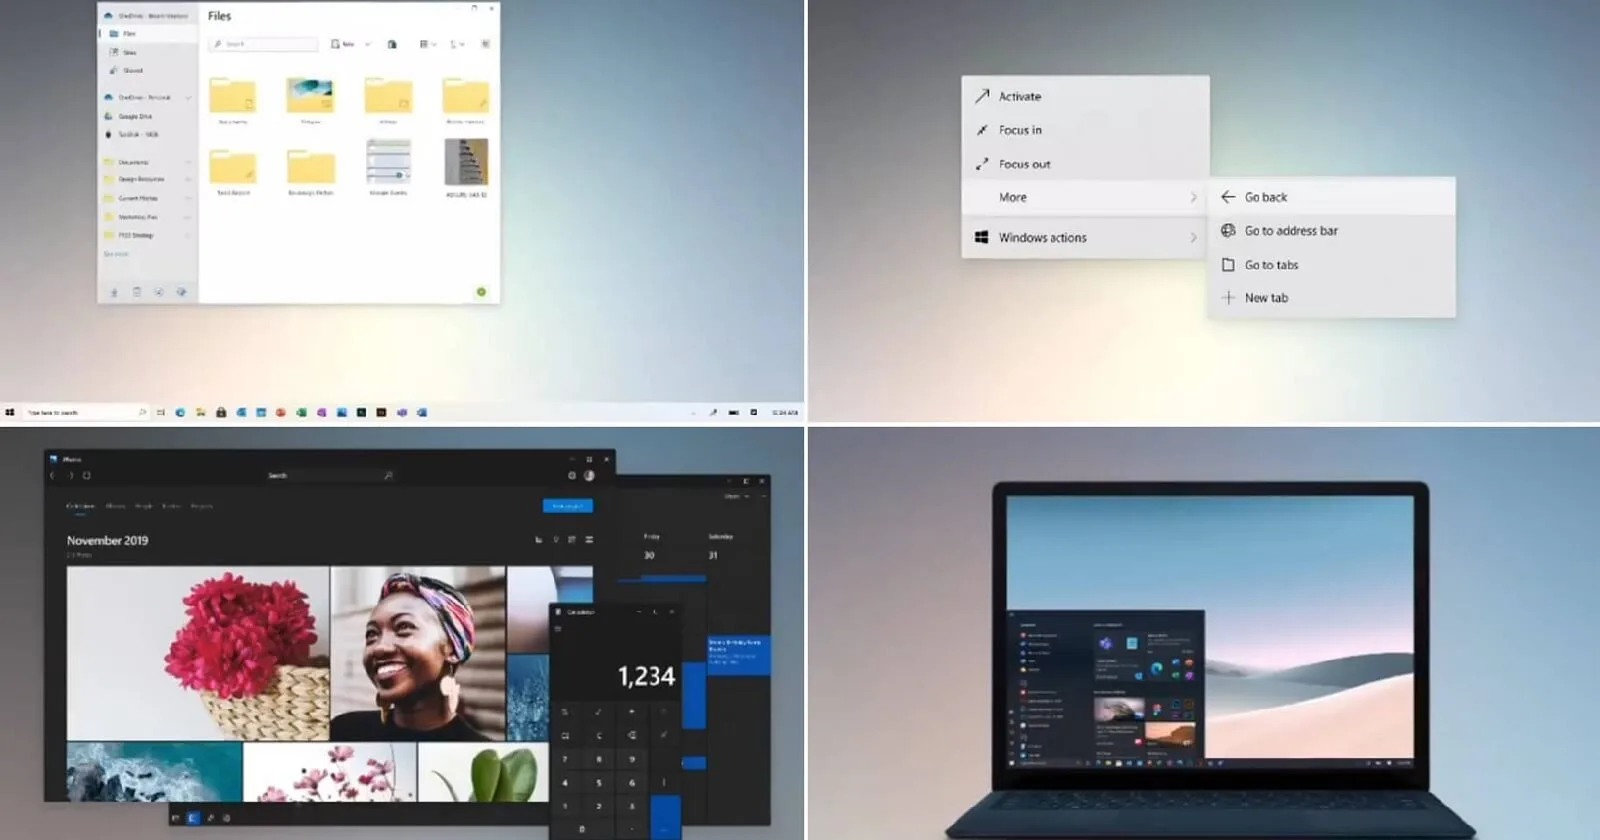 マイクロソフトは、Windows 10とSharfeのための印象的なアップデートを約束します